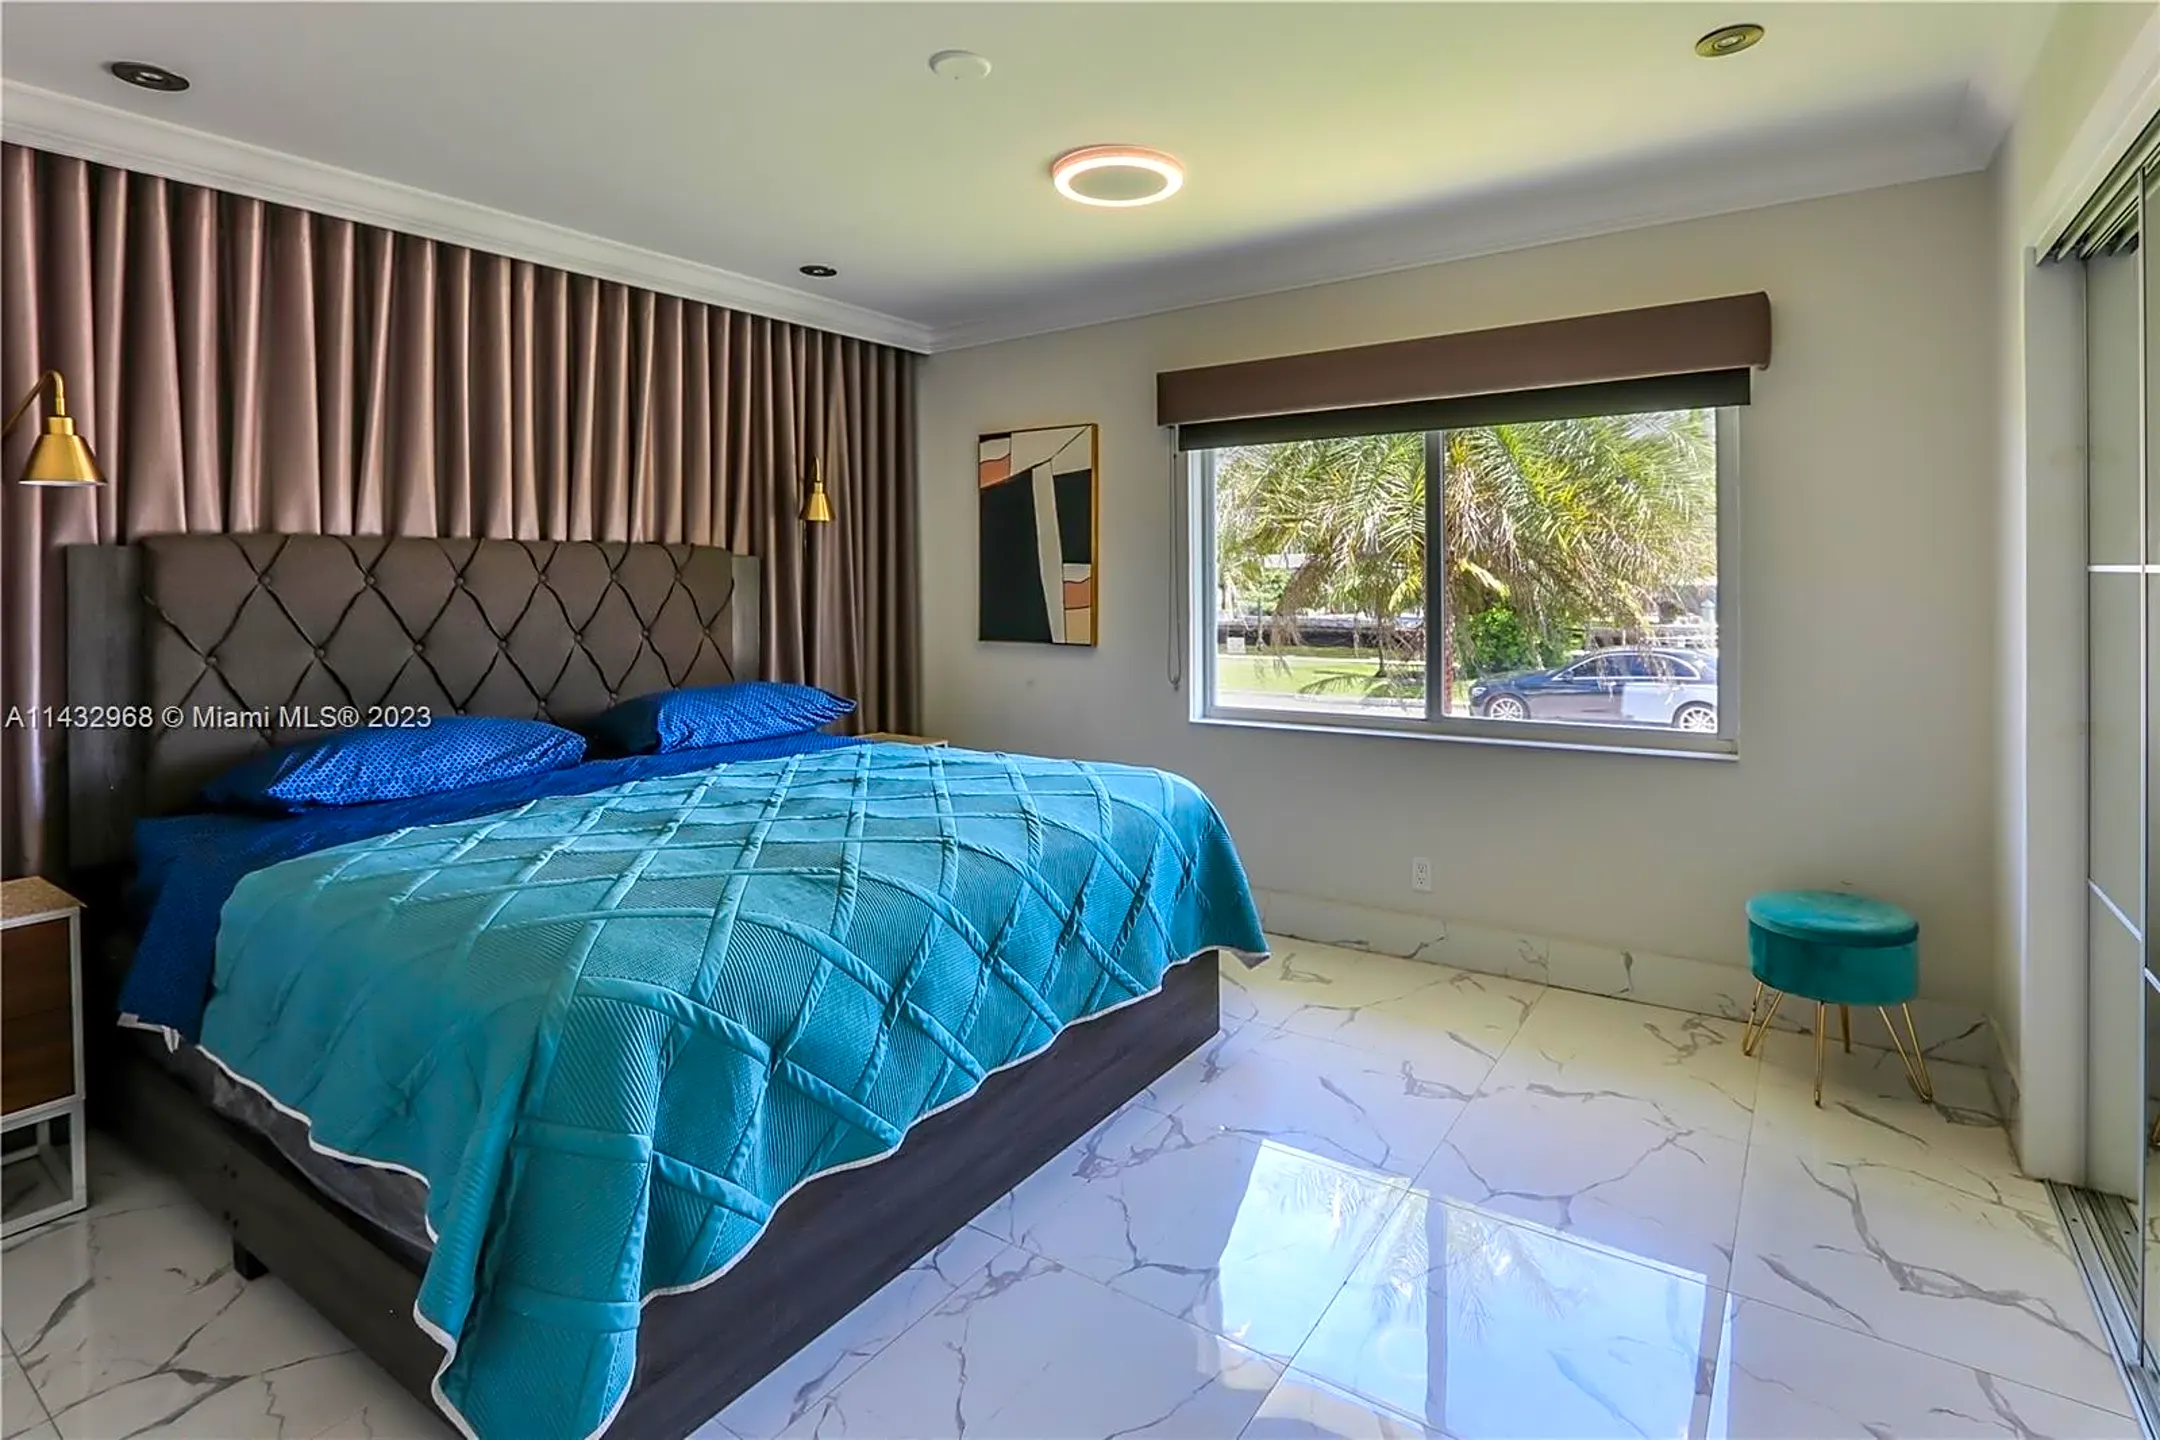 Bedroom - 1105 NE 89th St - Miami Shores, FL